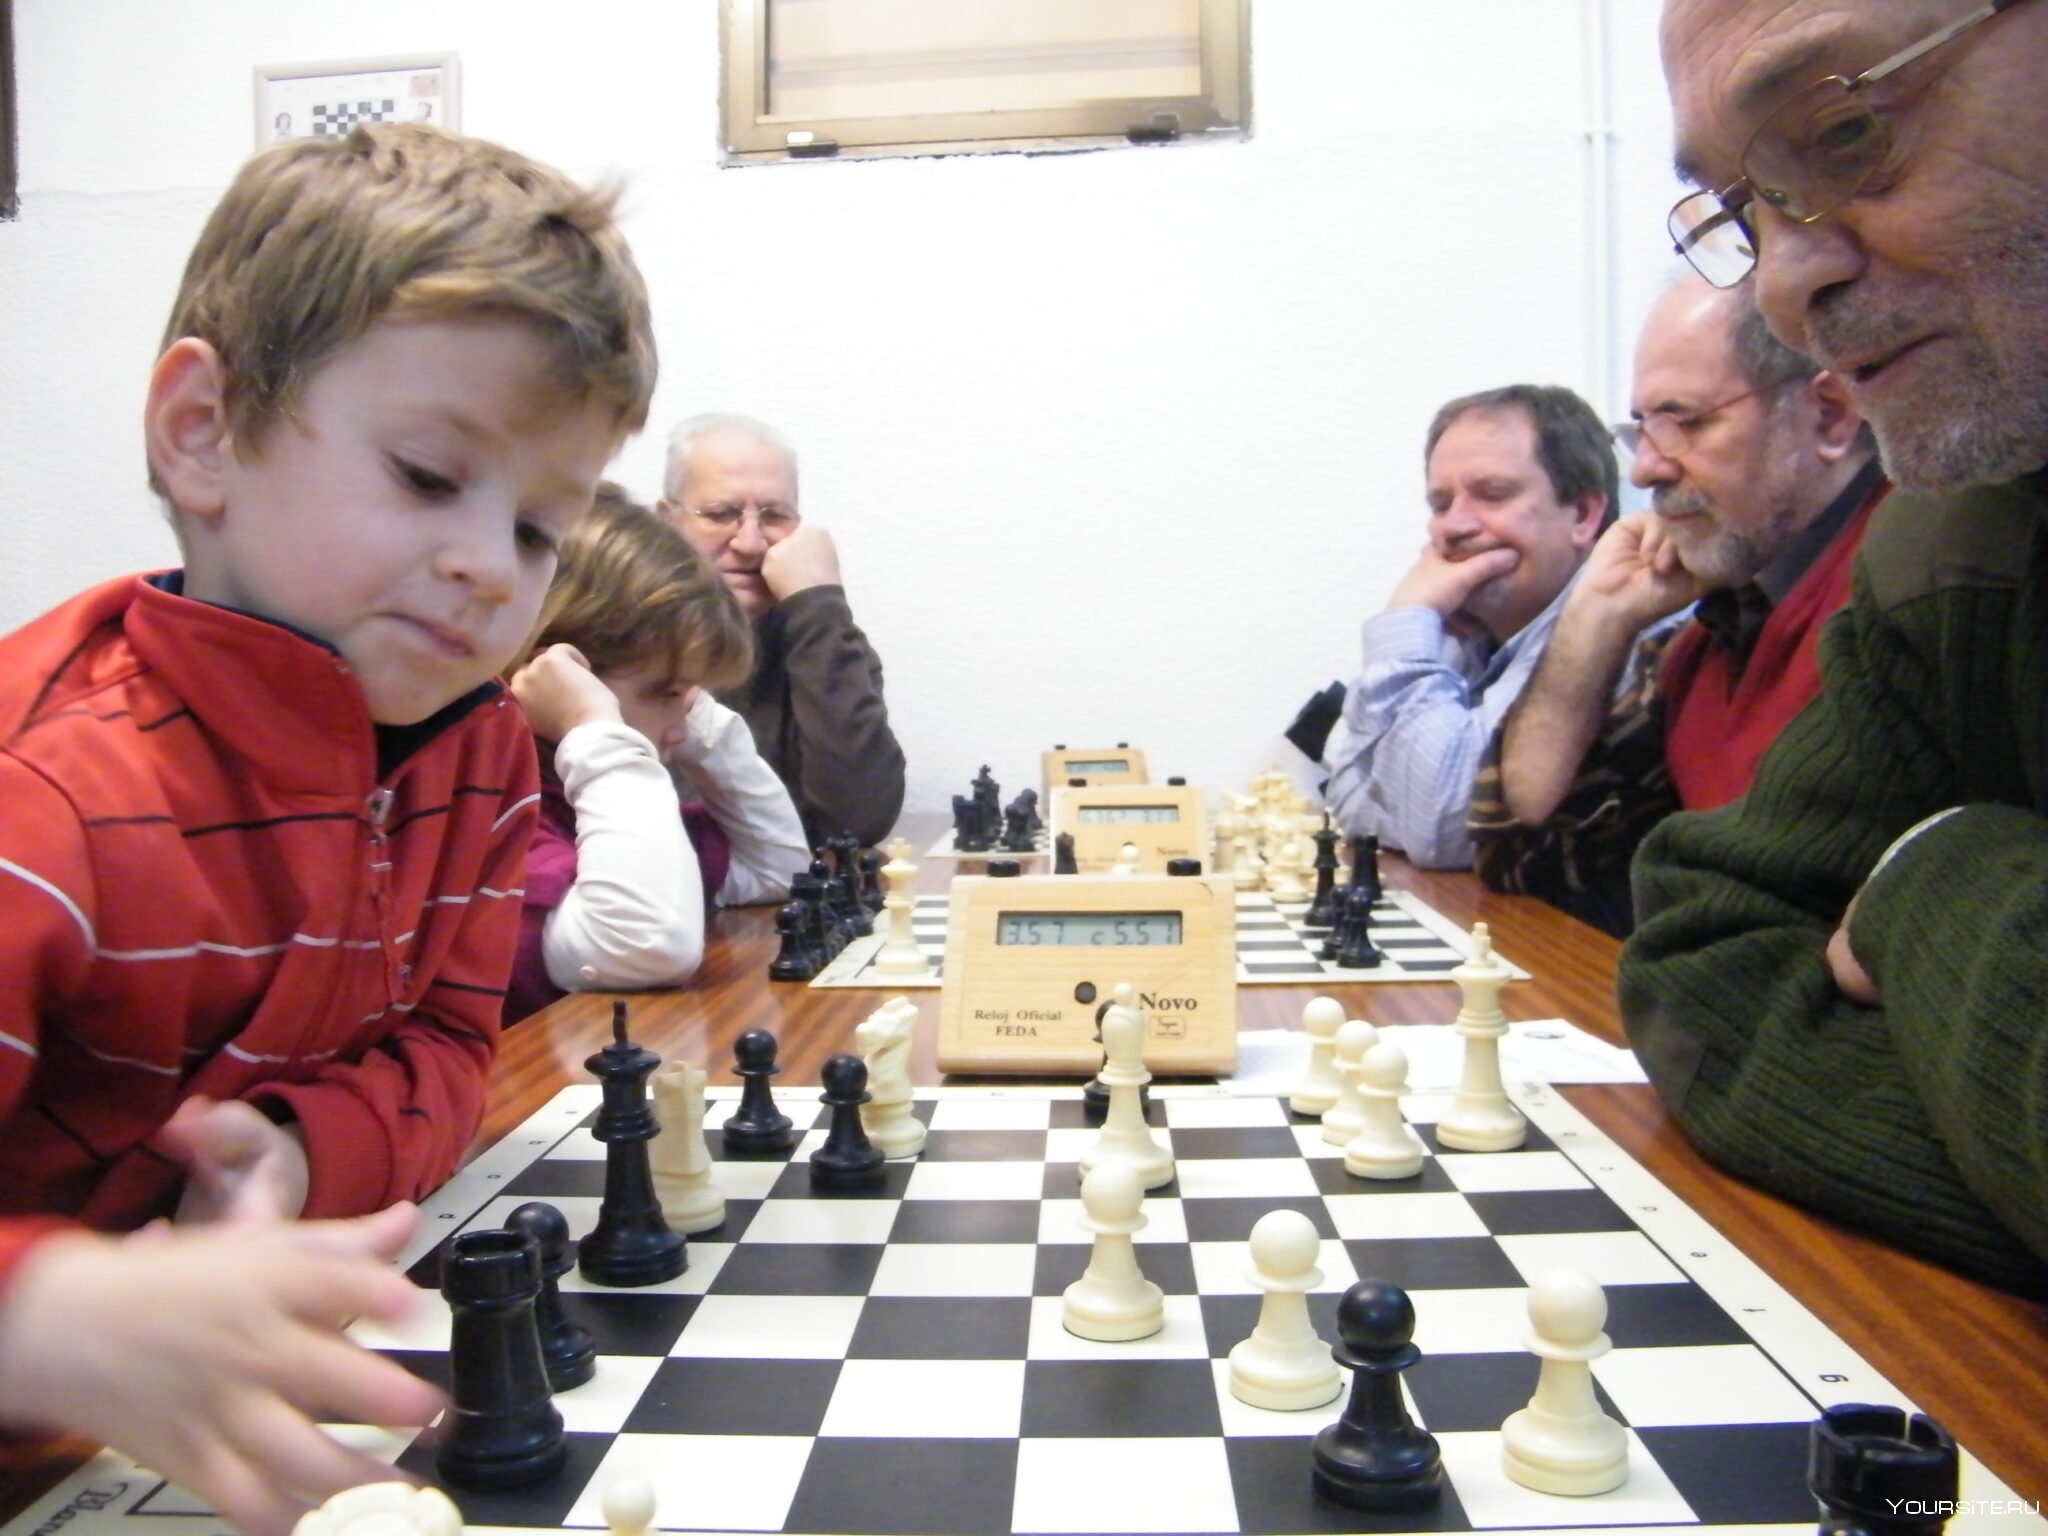 Шахматы играть с людьми со всего света. Шахматы для детей. Шахматный кружок для детей. Шахматные кружки для детей. Человек играющий в шахматы.